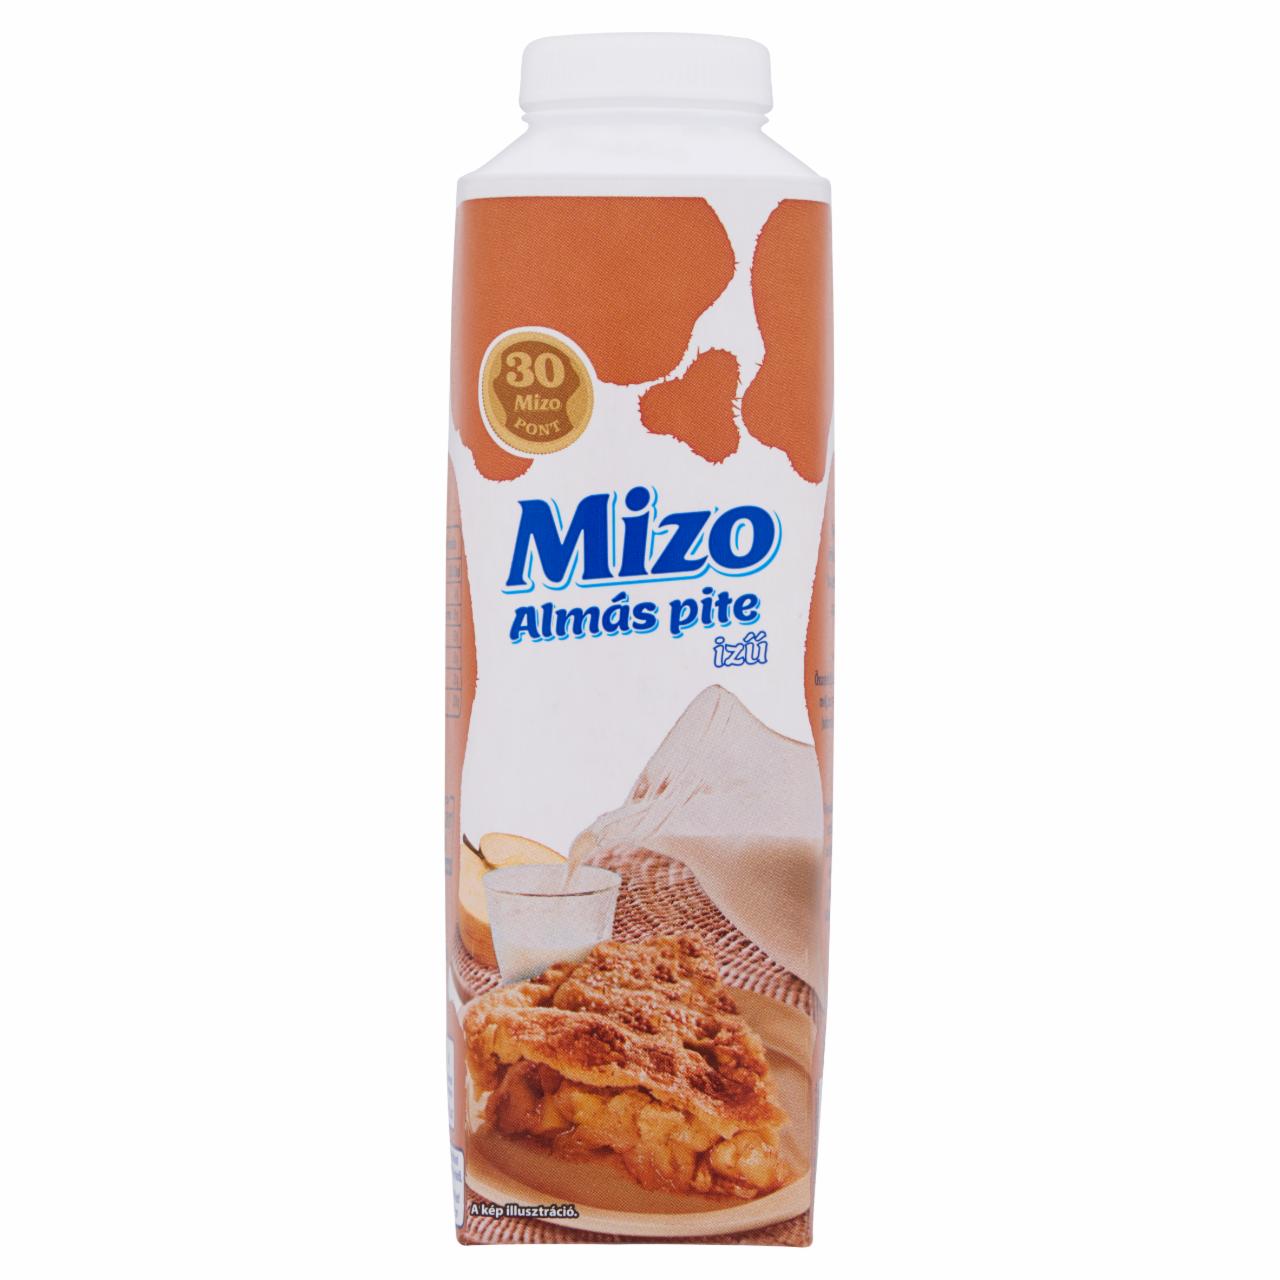 Képek - Mizo almás pite ízű tej 450 ml